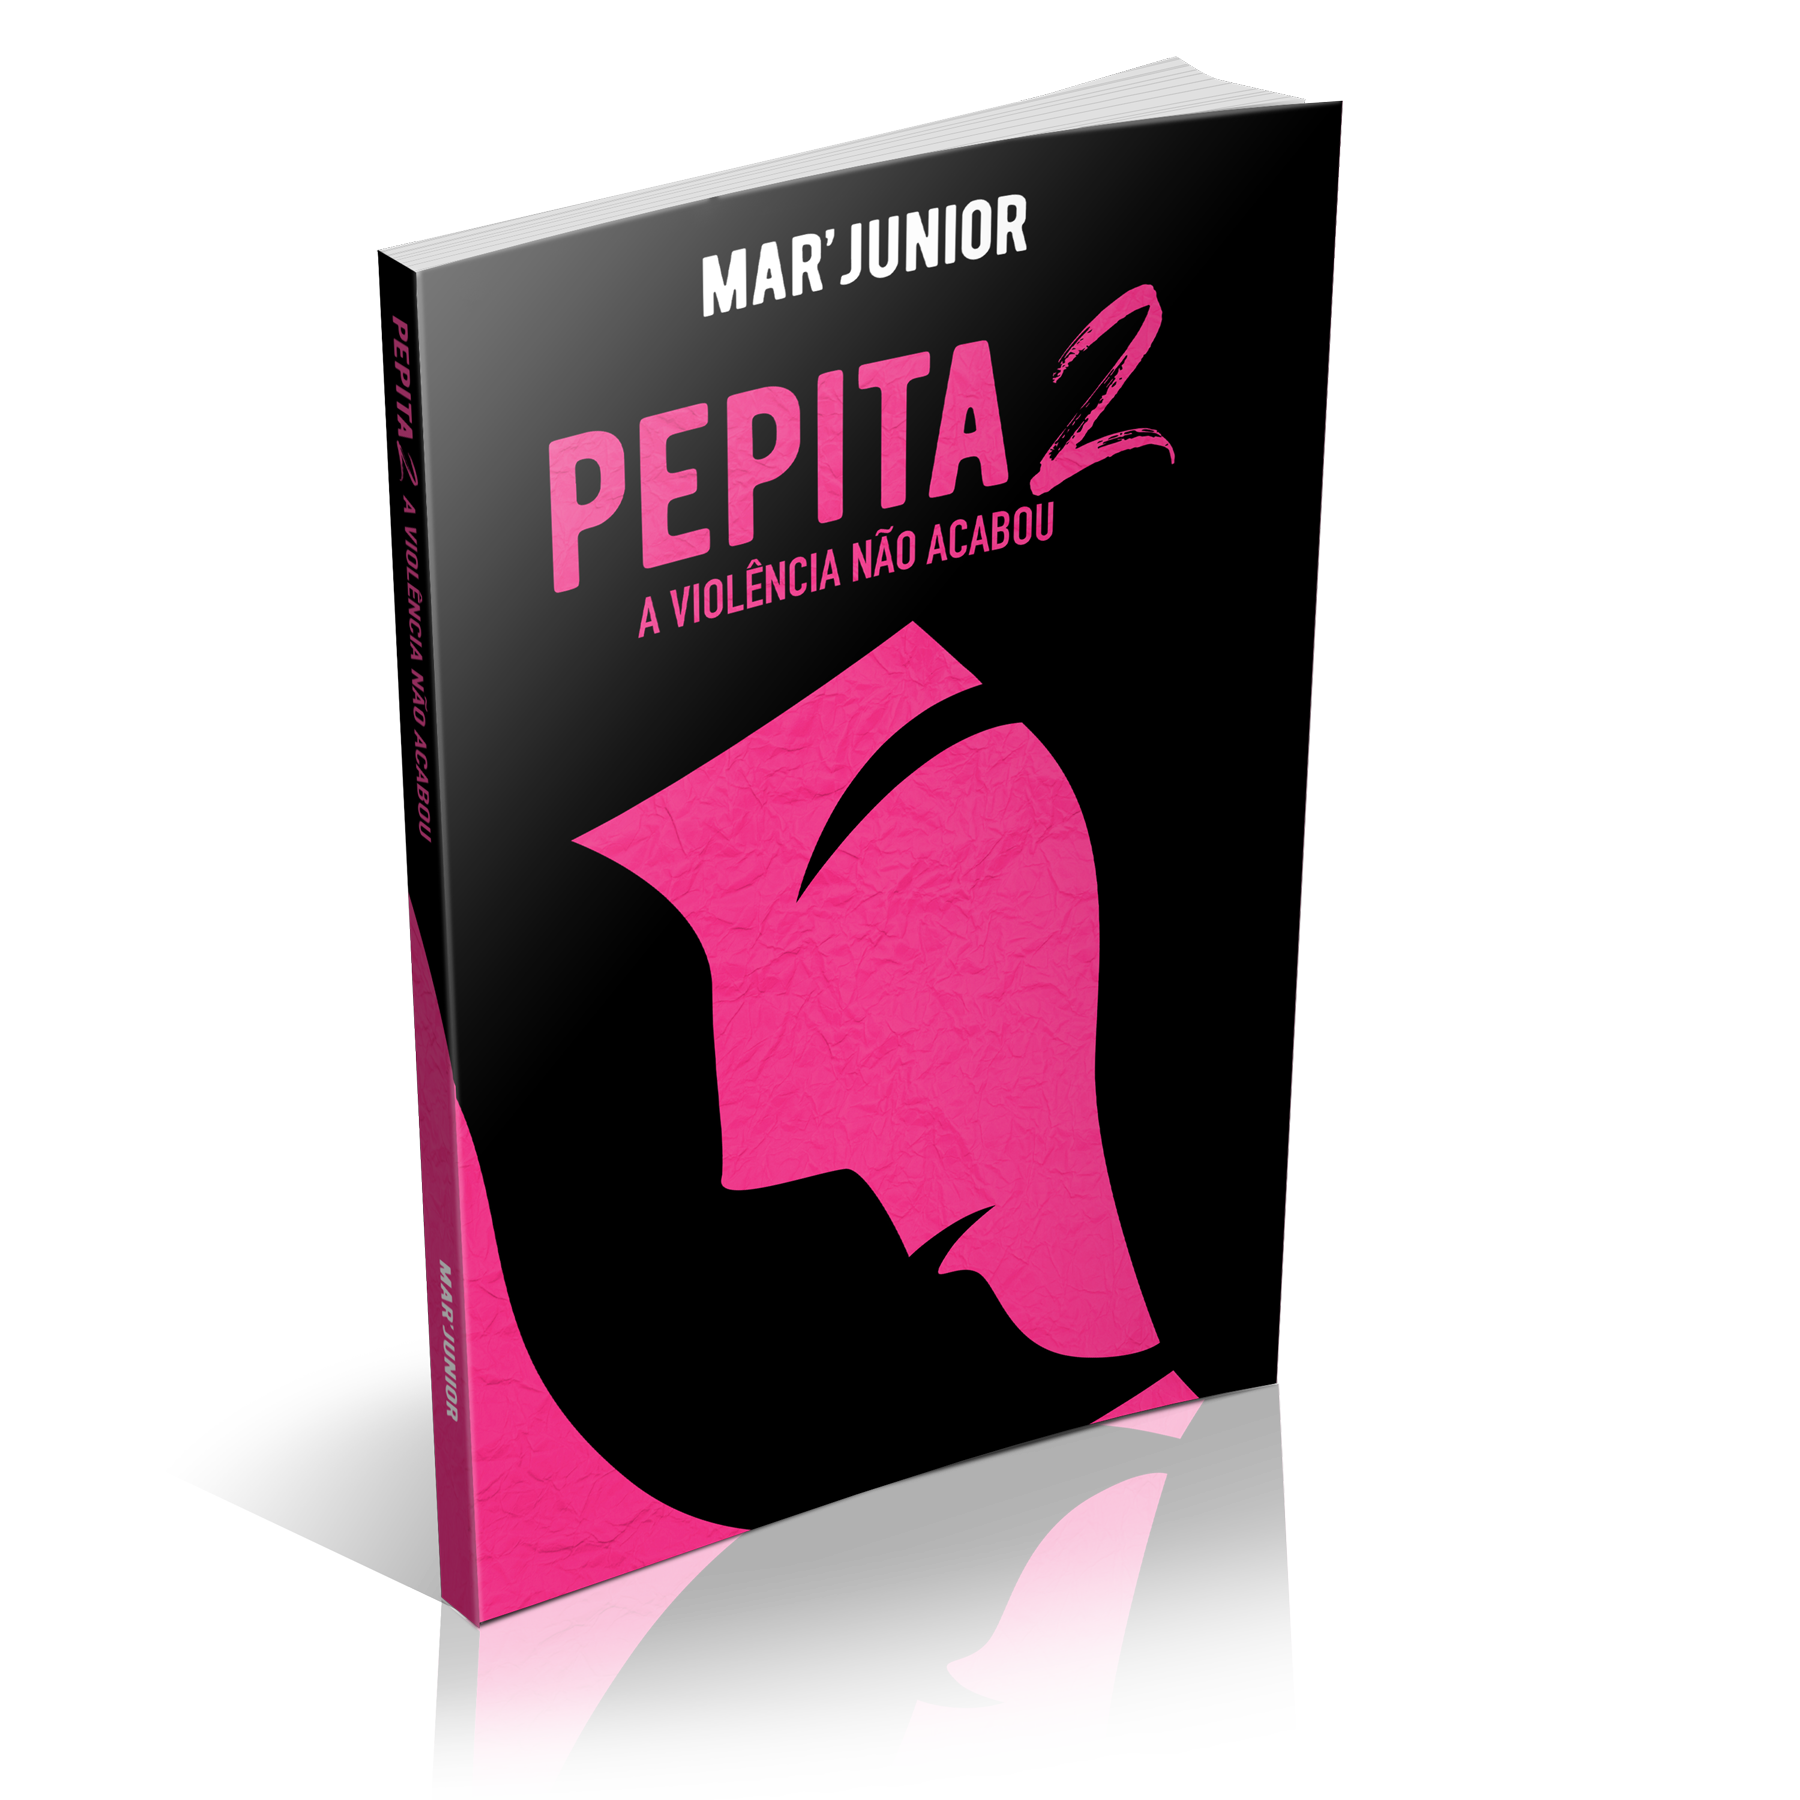 Capa do livro Pepita 2